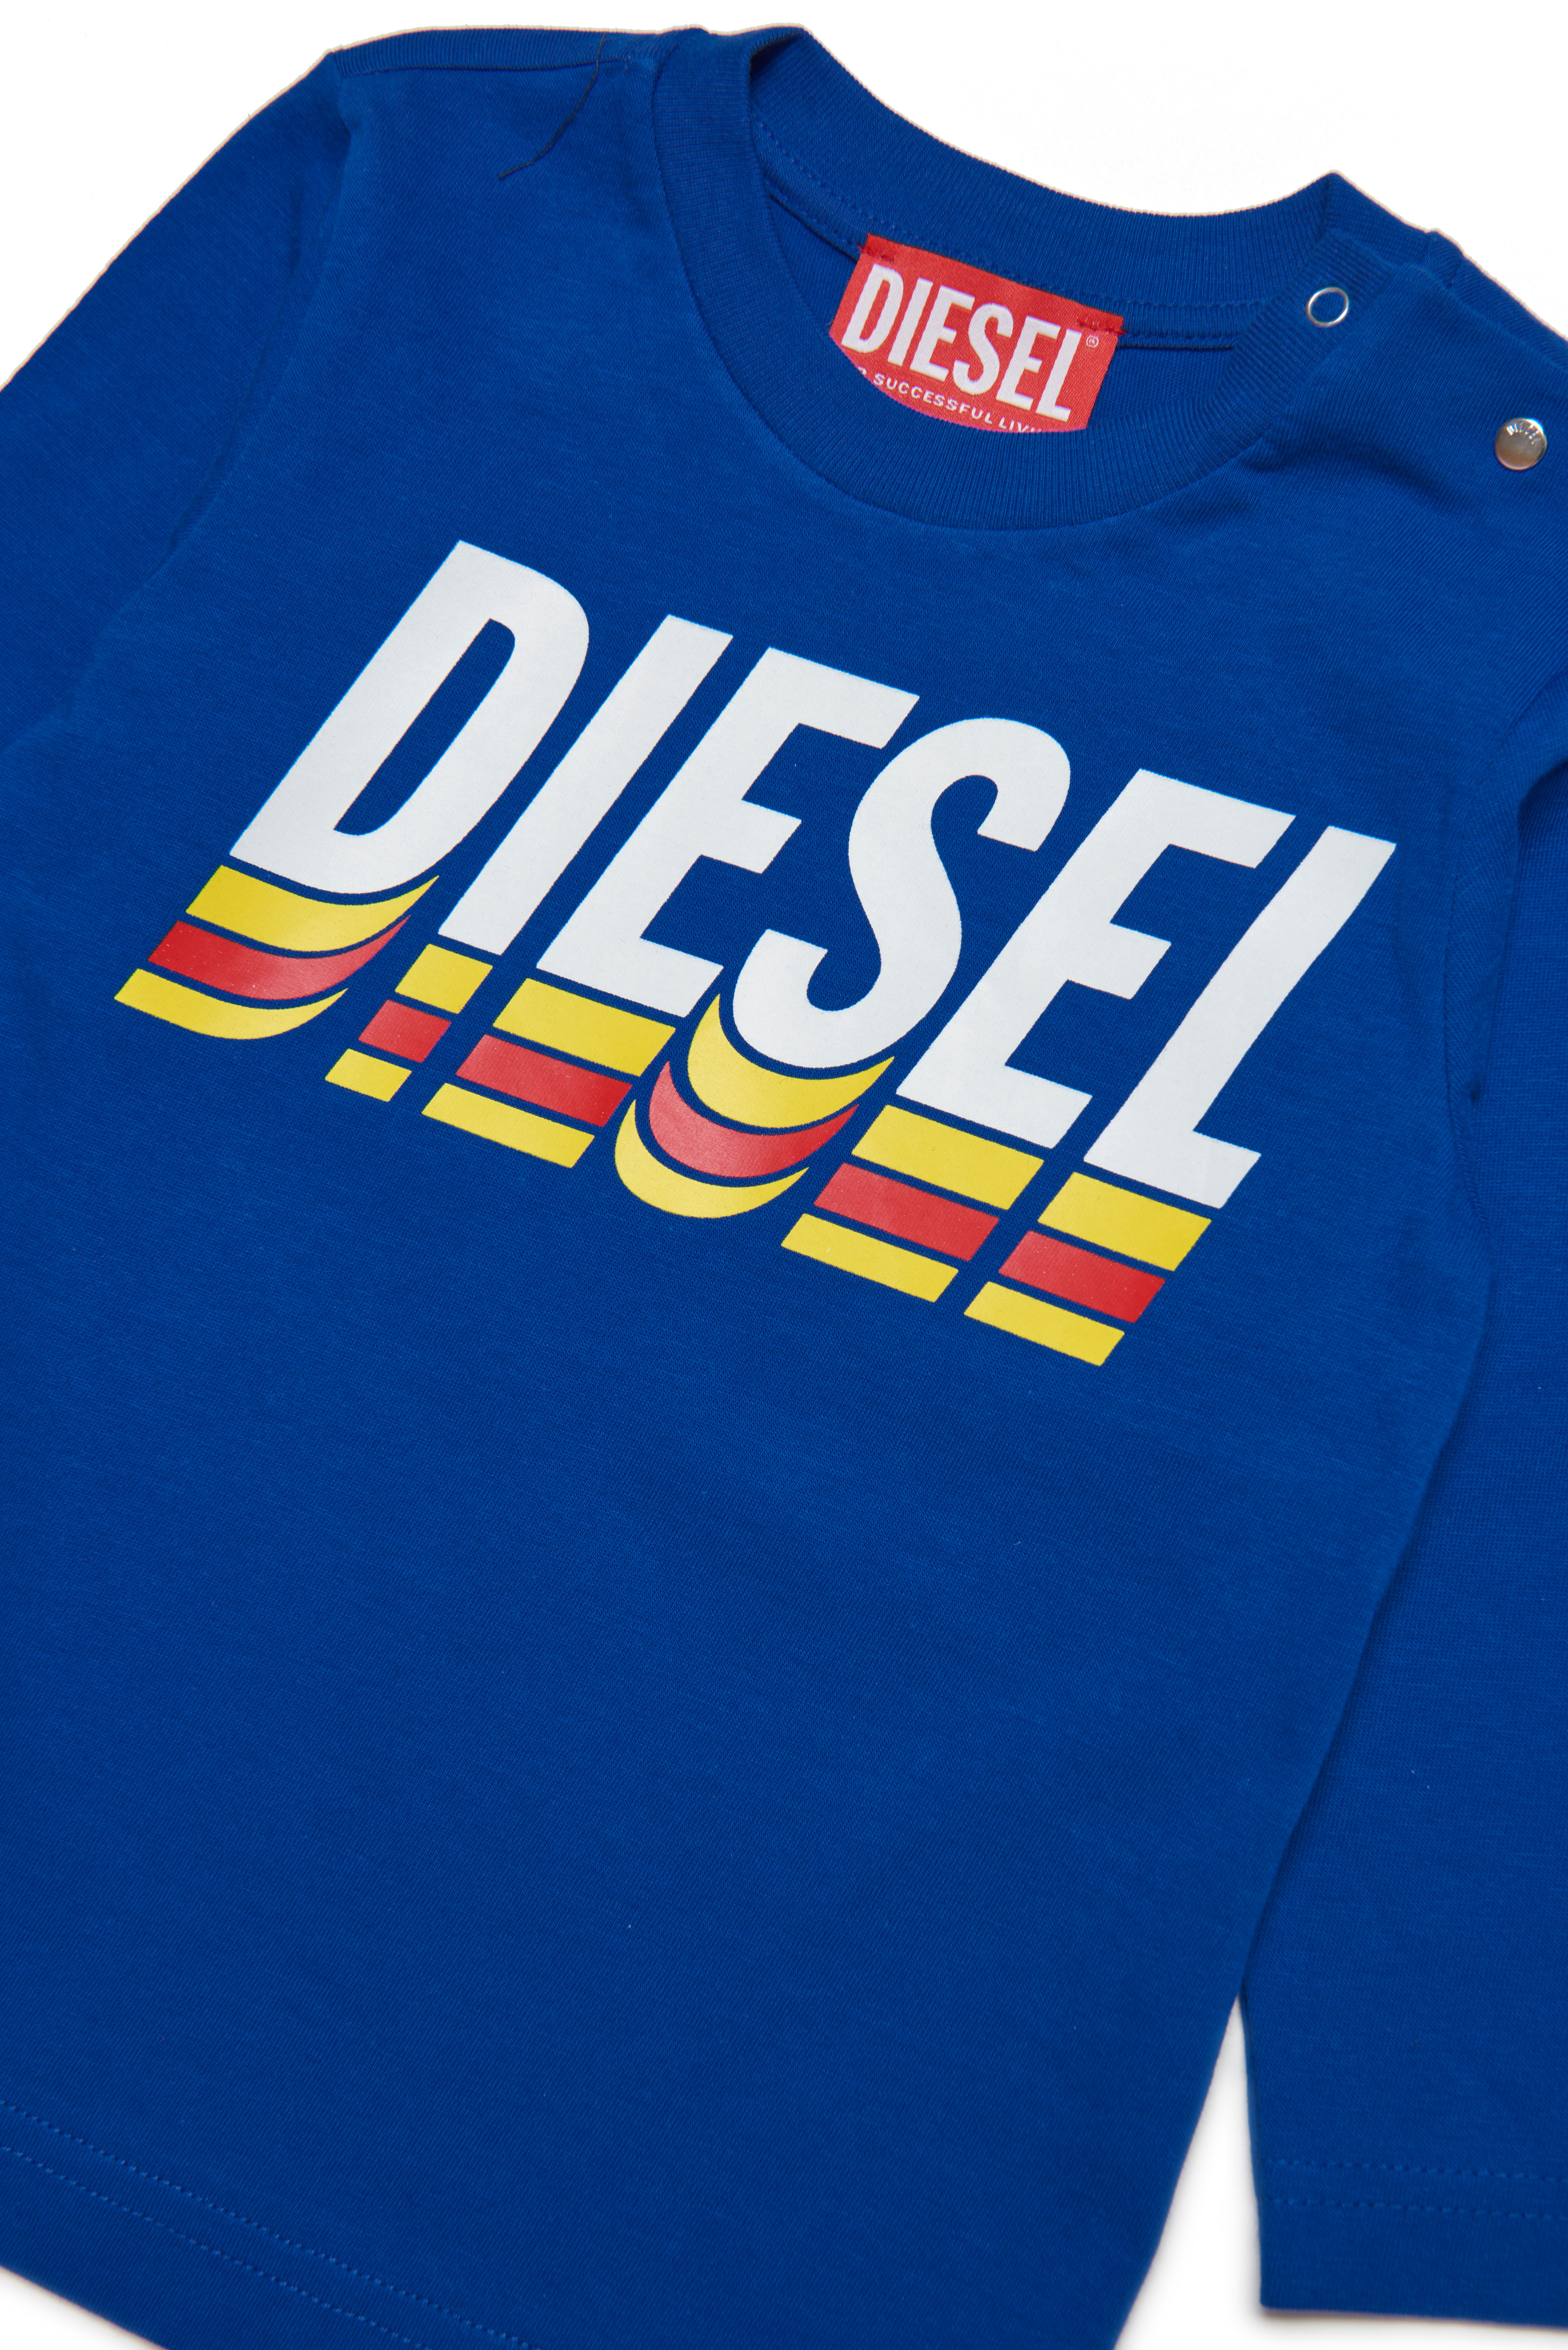 Diesel - TVASELSB, Blau - Image 3